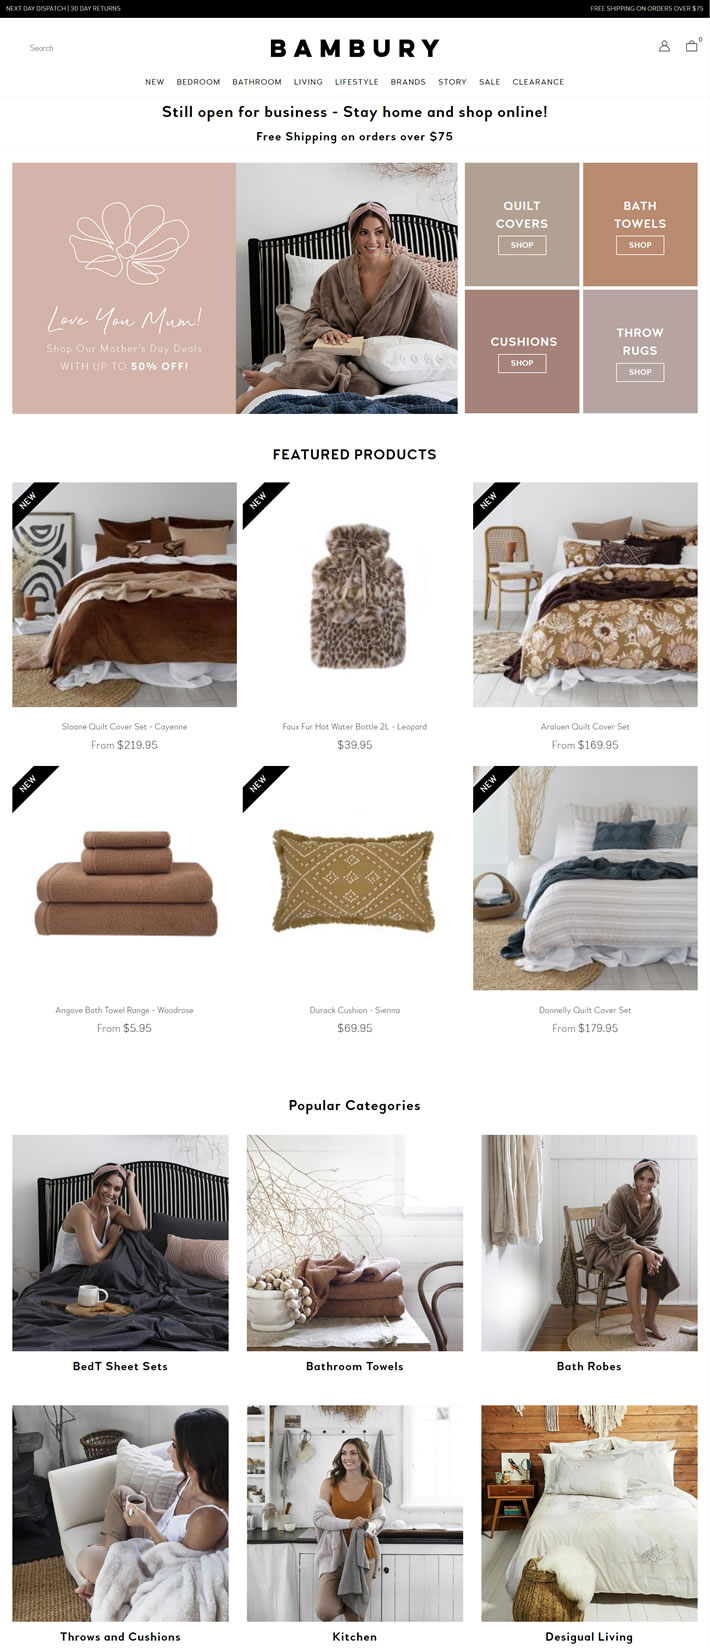 澳大利亞床上用品、浴巾和傢居用品購物網站：Bambury 澳洲購物網站 MeetKK-MeetKK